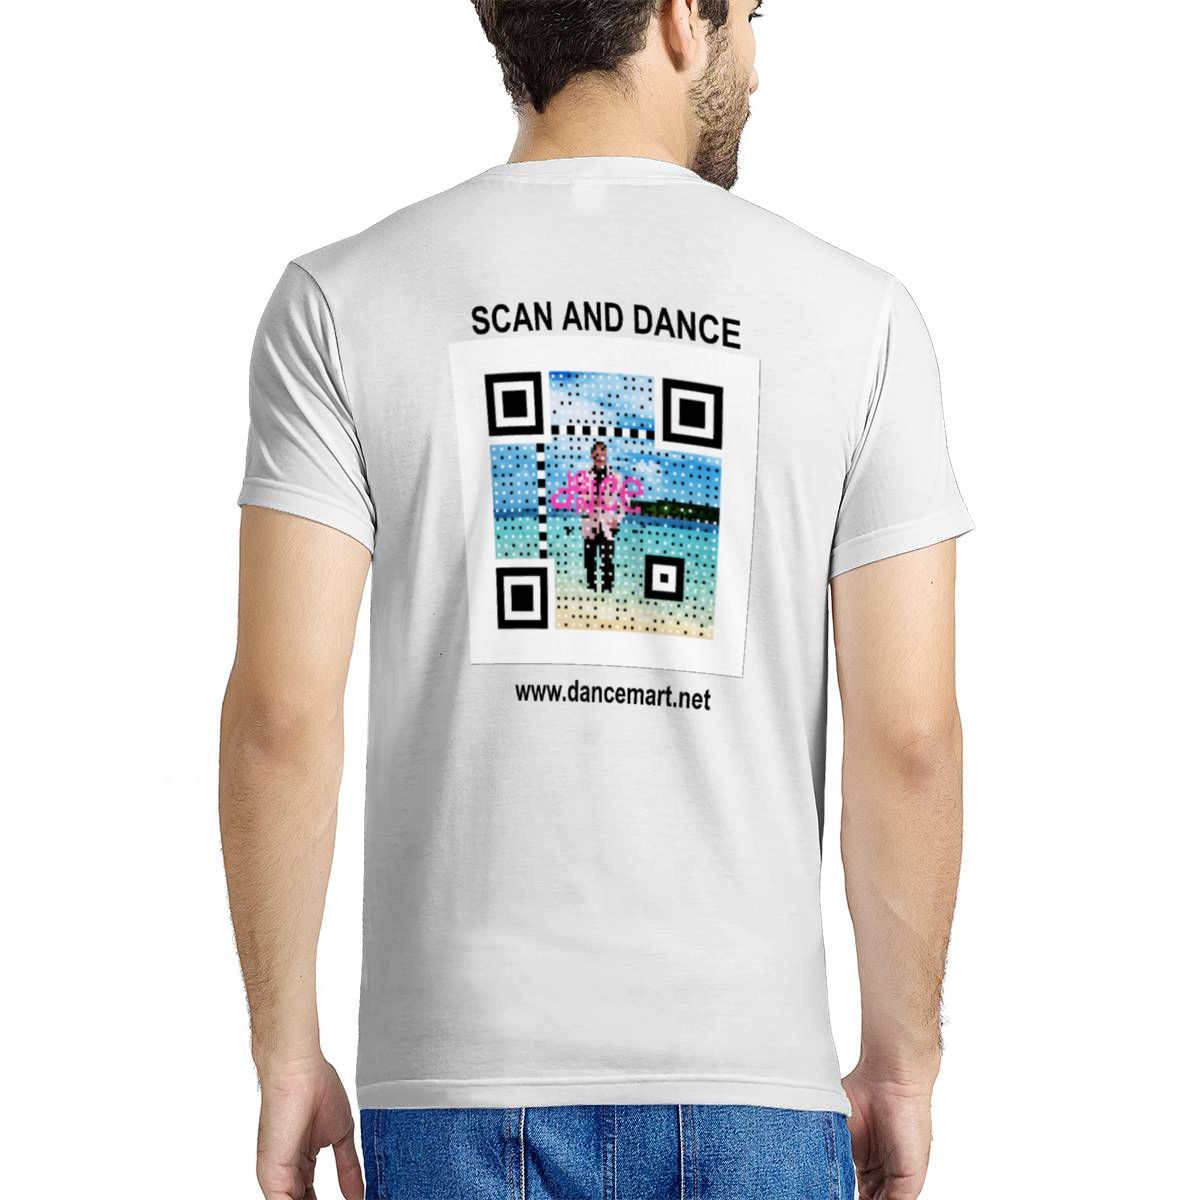 DanceMart "Scan and Dance" T-shirt